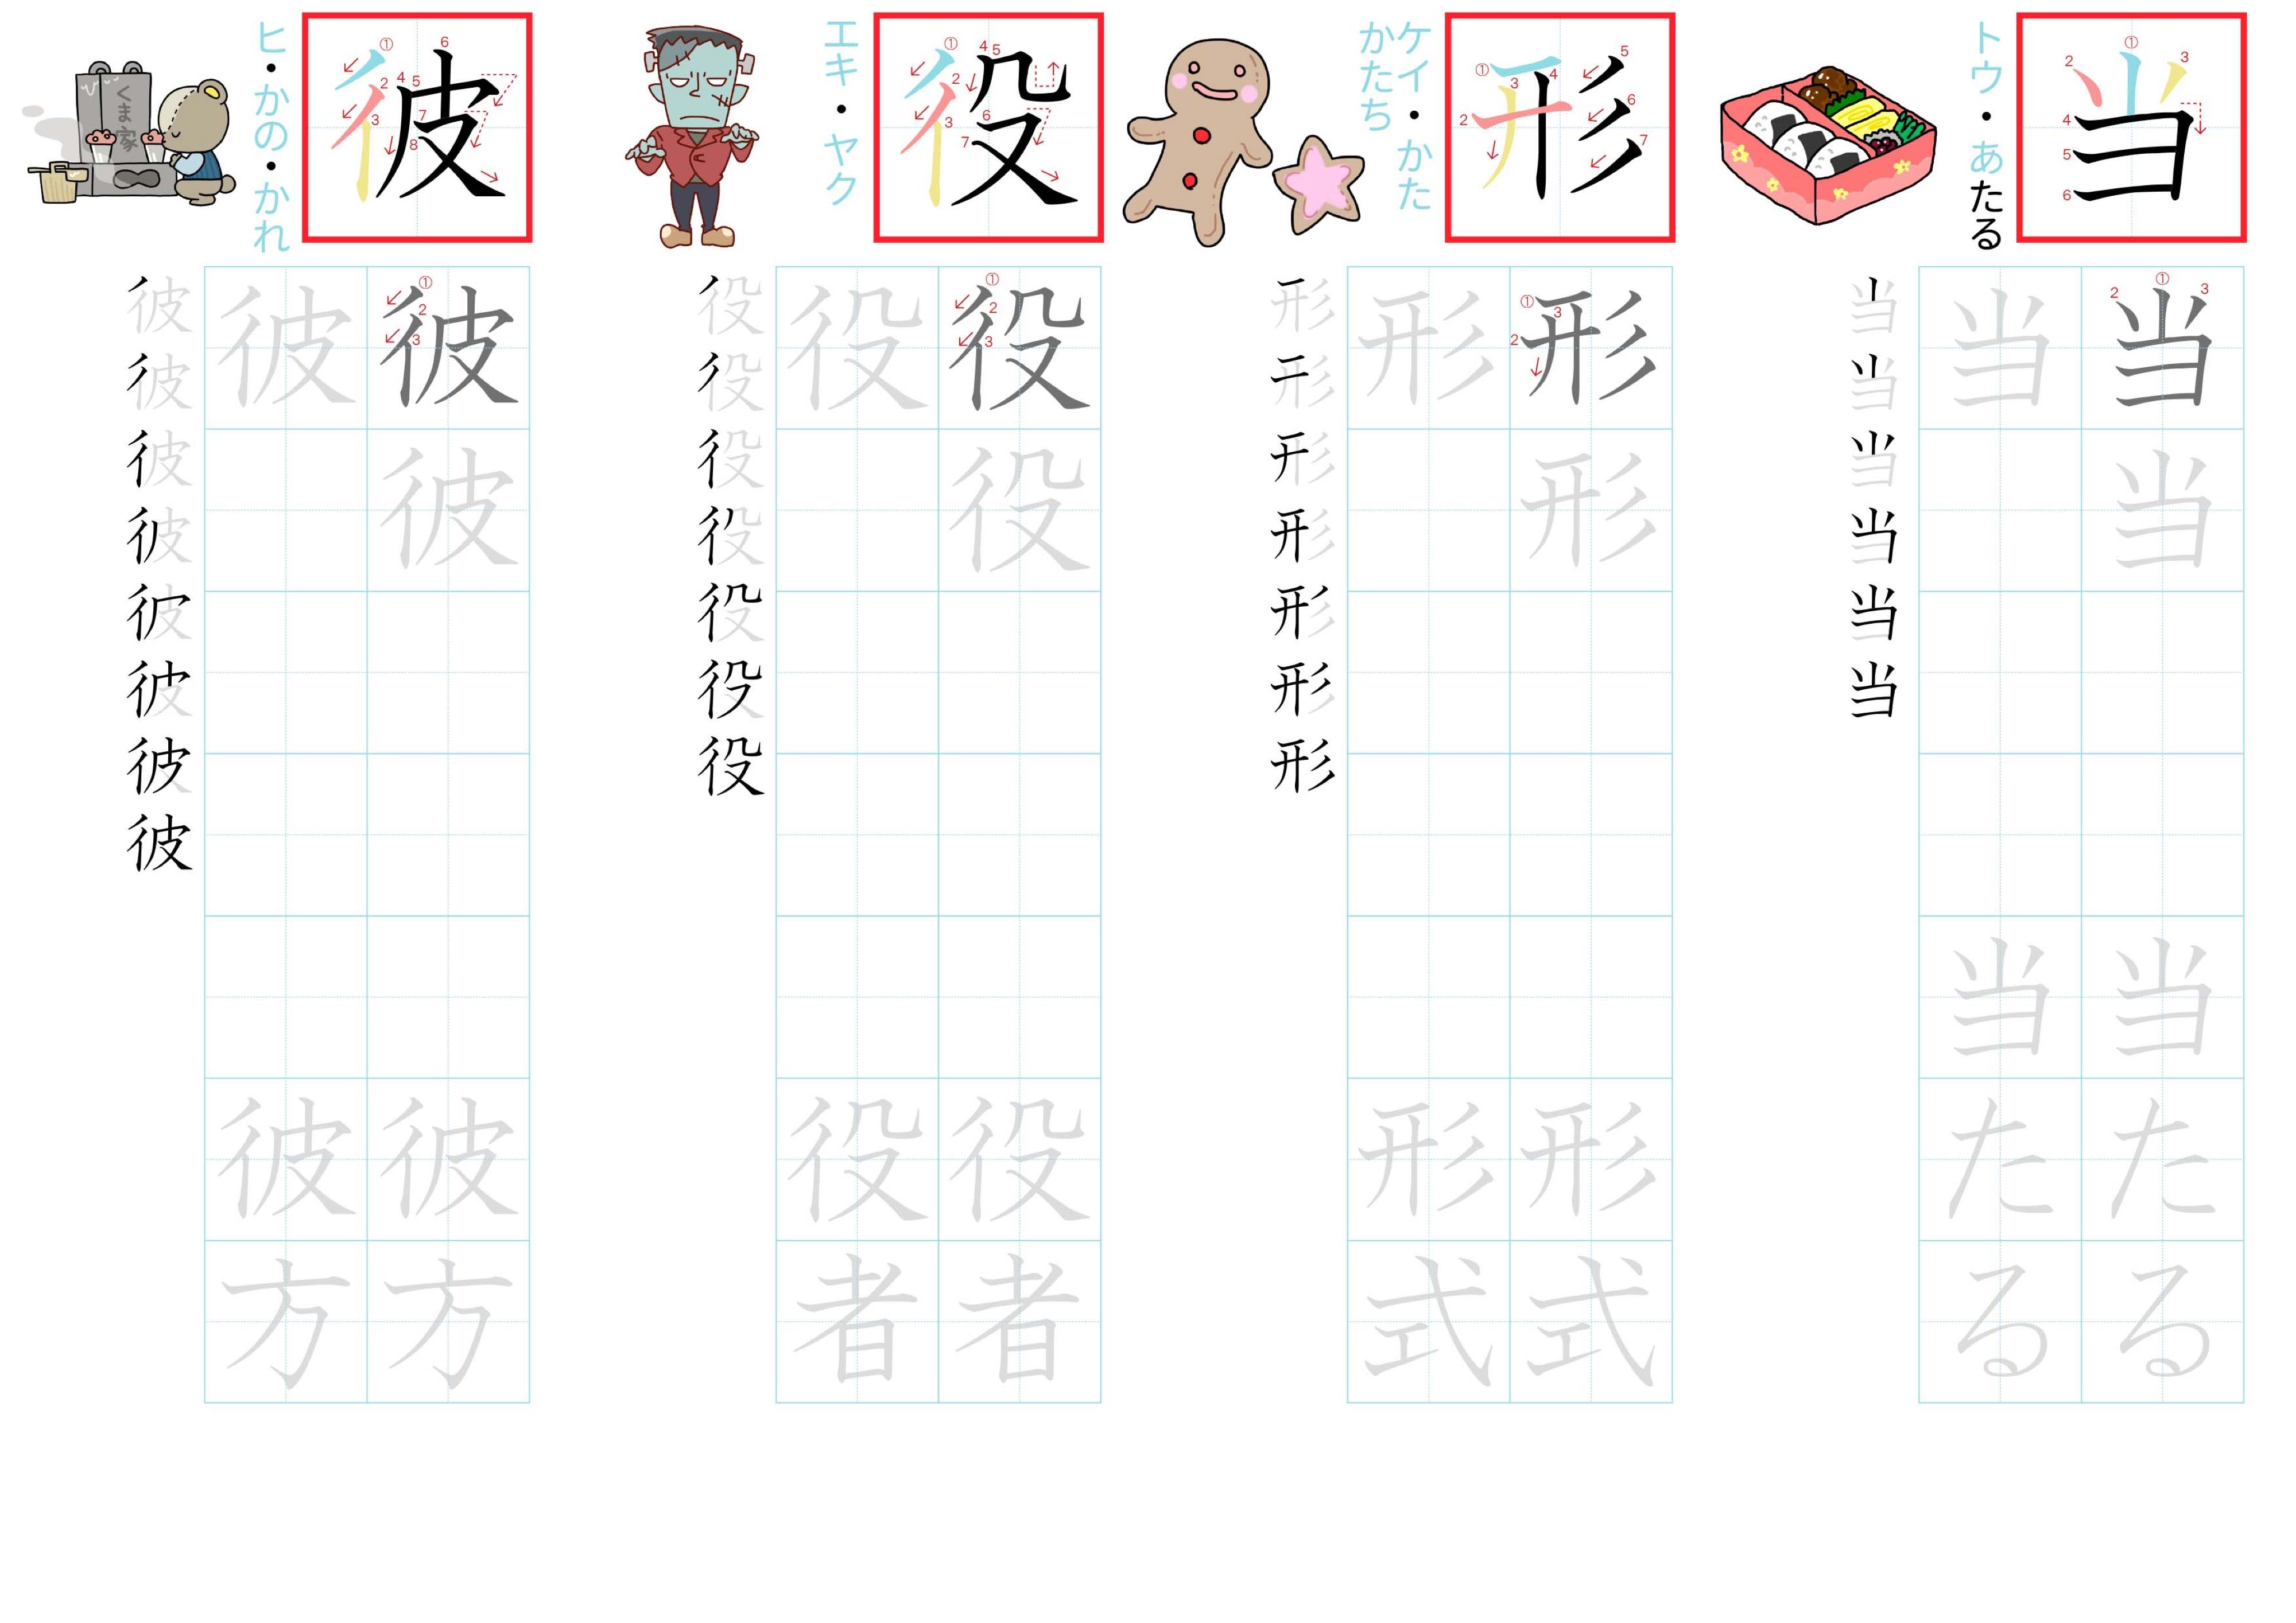 kanji-practice-card-n3-japanese-094